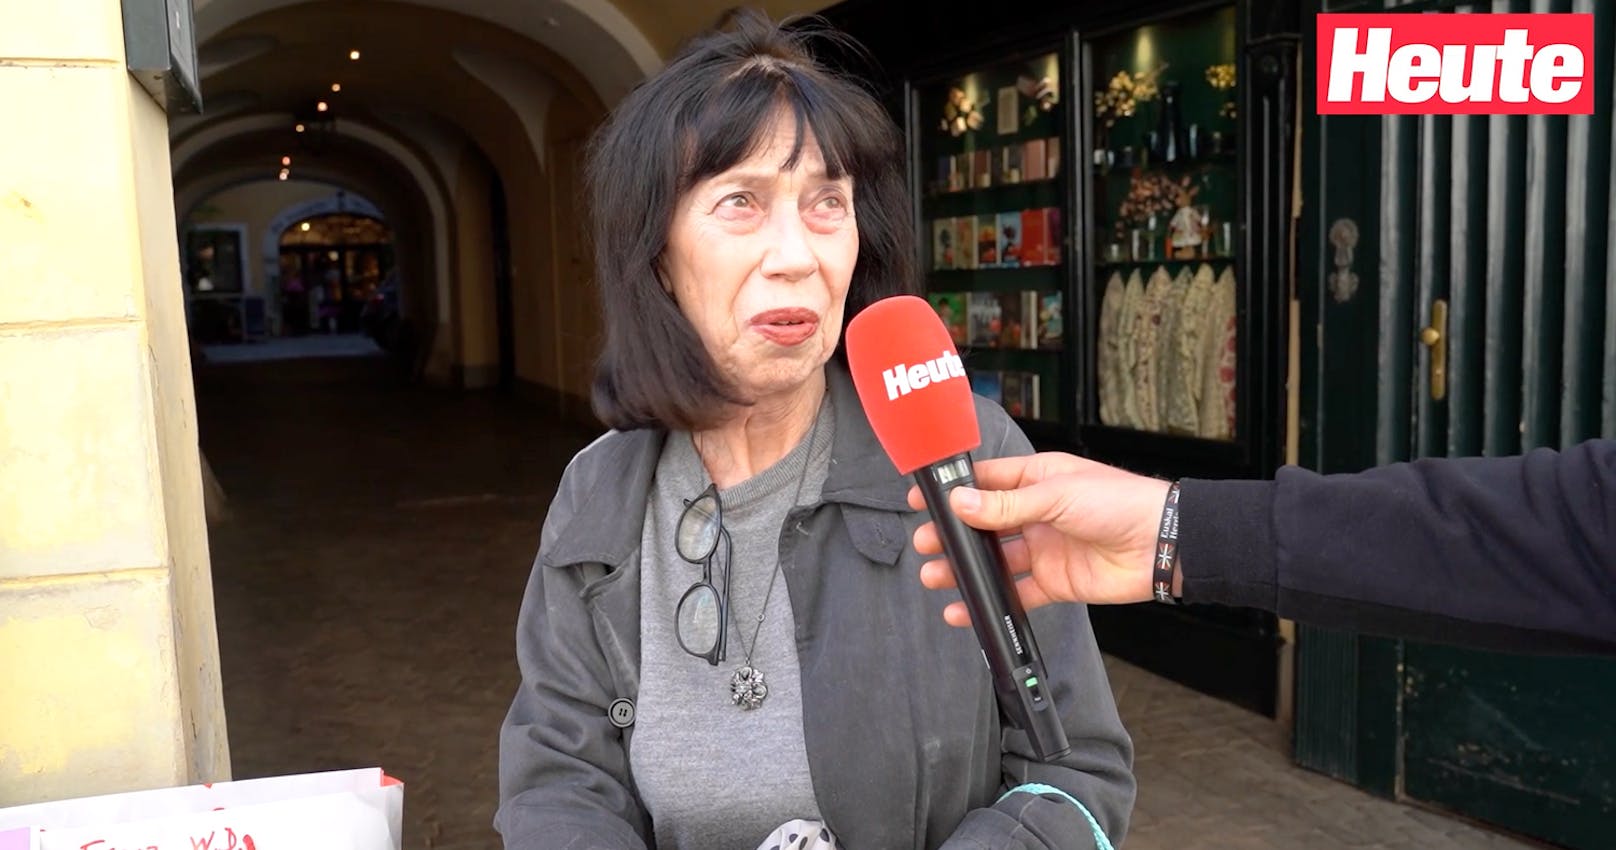 Anna aus Wien erzählt bei der <em>"Heute"</em>-Umfrage: "Ich habe eine kleine Pension und bekomme 417 Euro."